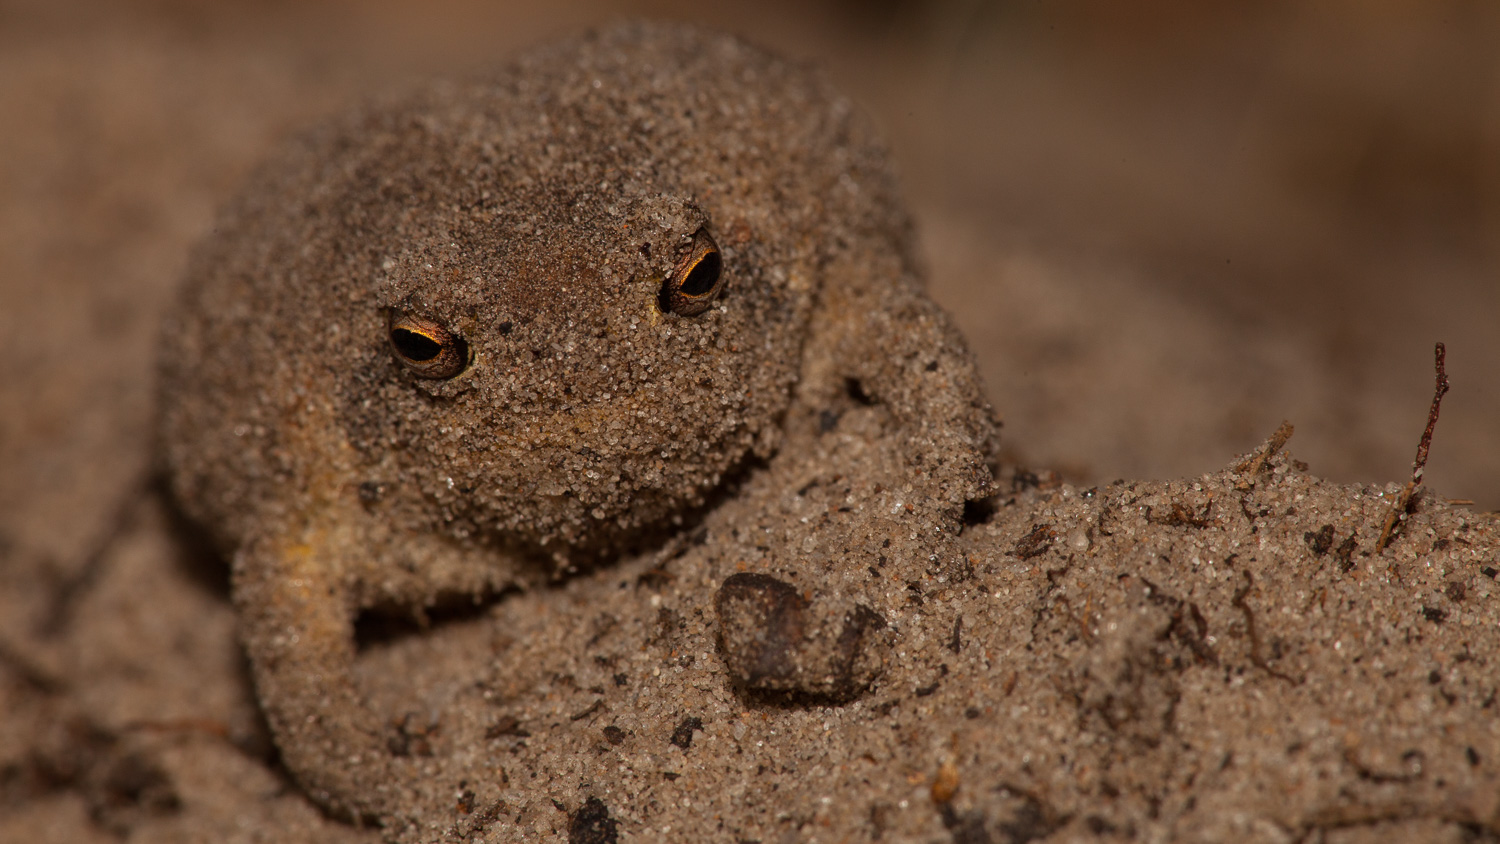 Sapo das dunas / Dune Frog